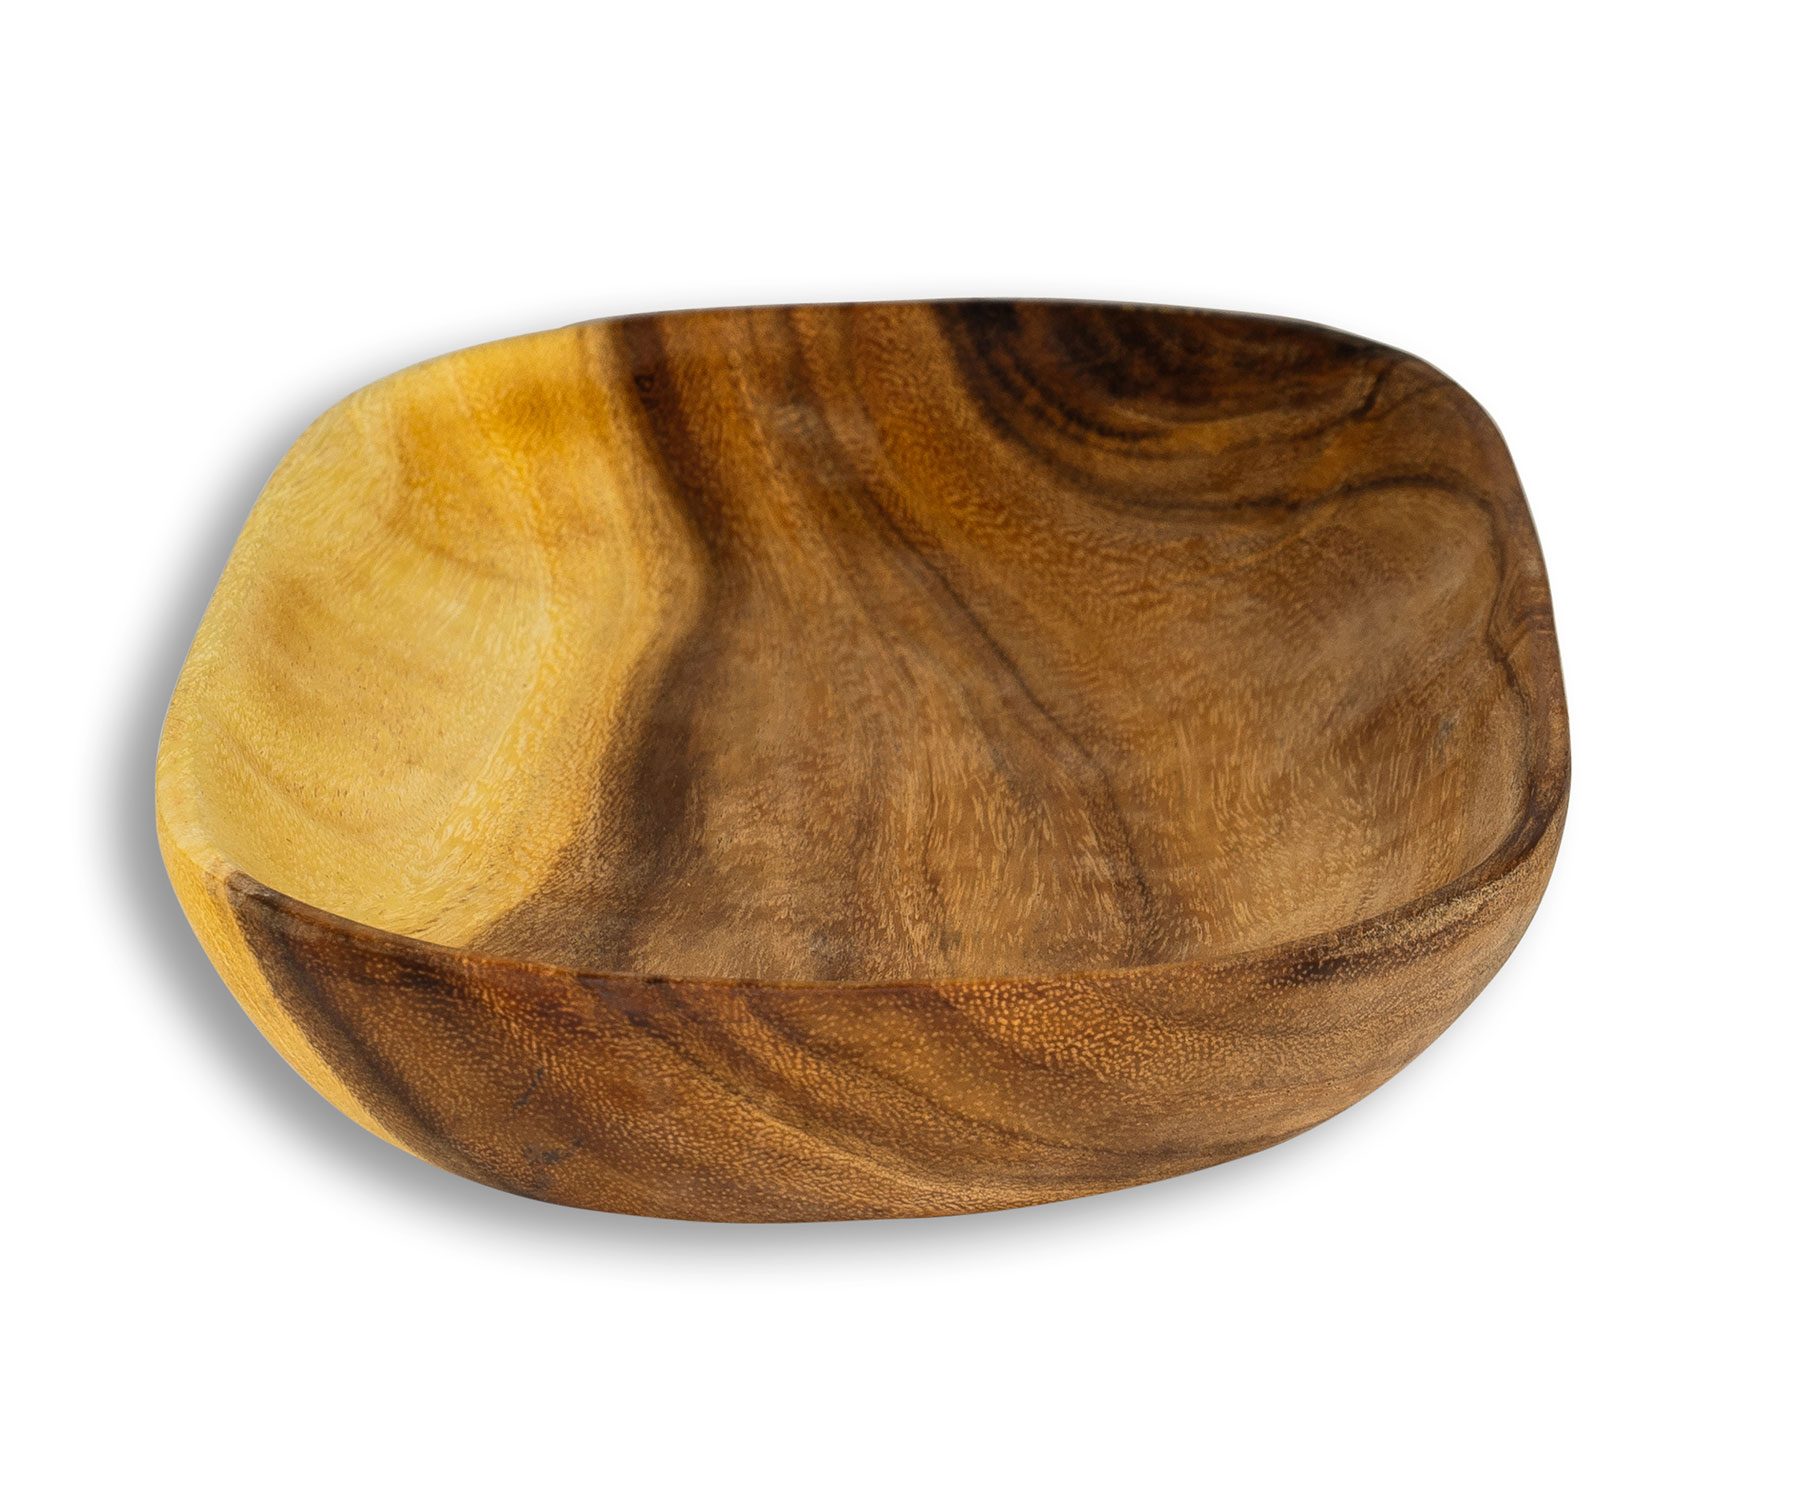 Holztablett Akazie 40x18cm Schale Obstschale Tablett Oval Rechteckig Holz Unikat